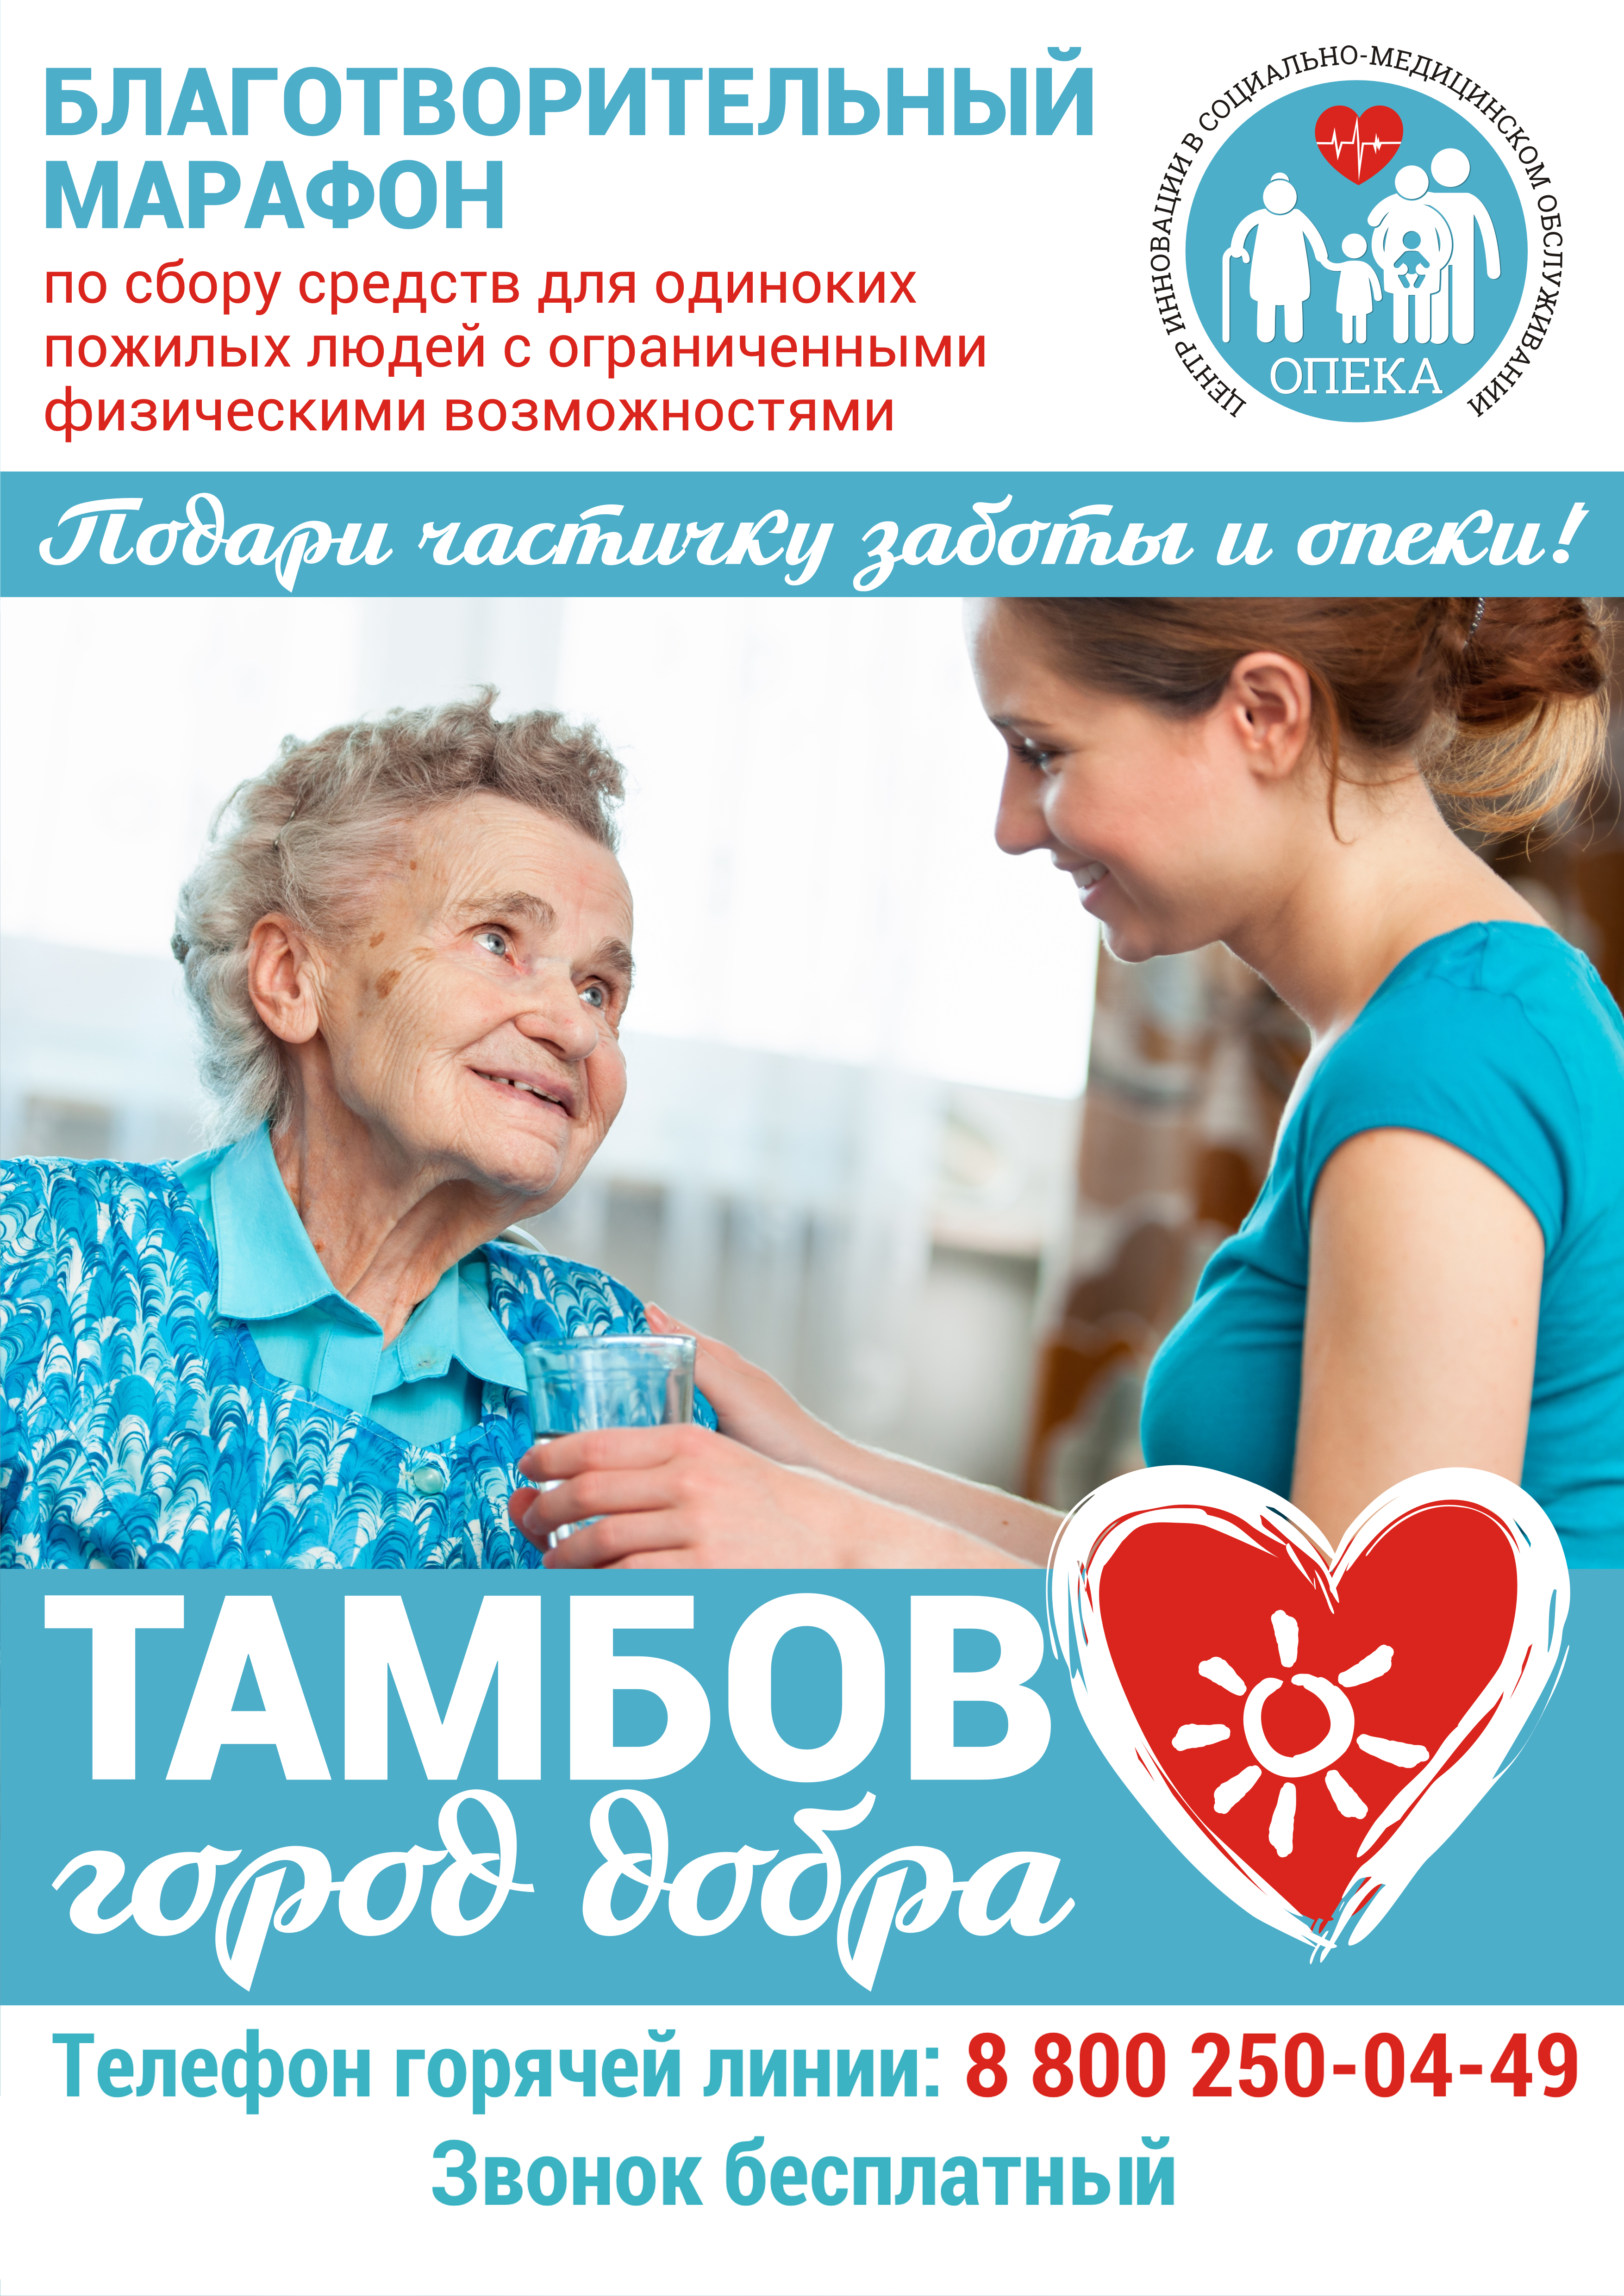 Забота тамбов сайт. Социальная реклама помощь пожилых людей. Акция пожилого человека. Социальная реклама для помощи престарелым. Благотворительность для пожилых людей.